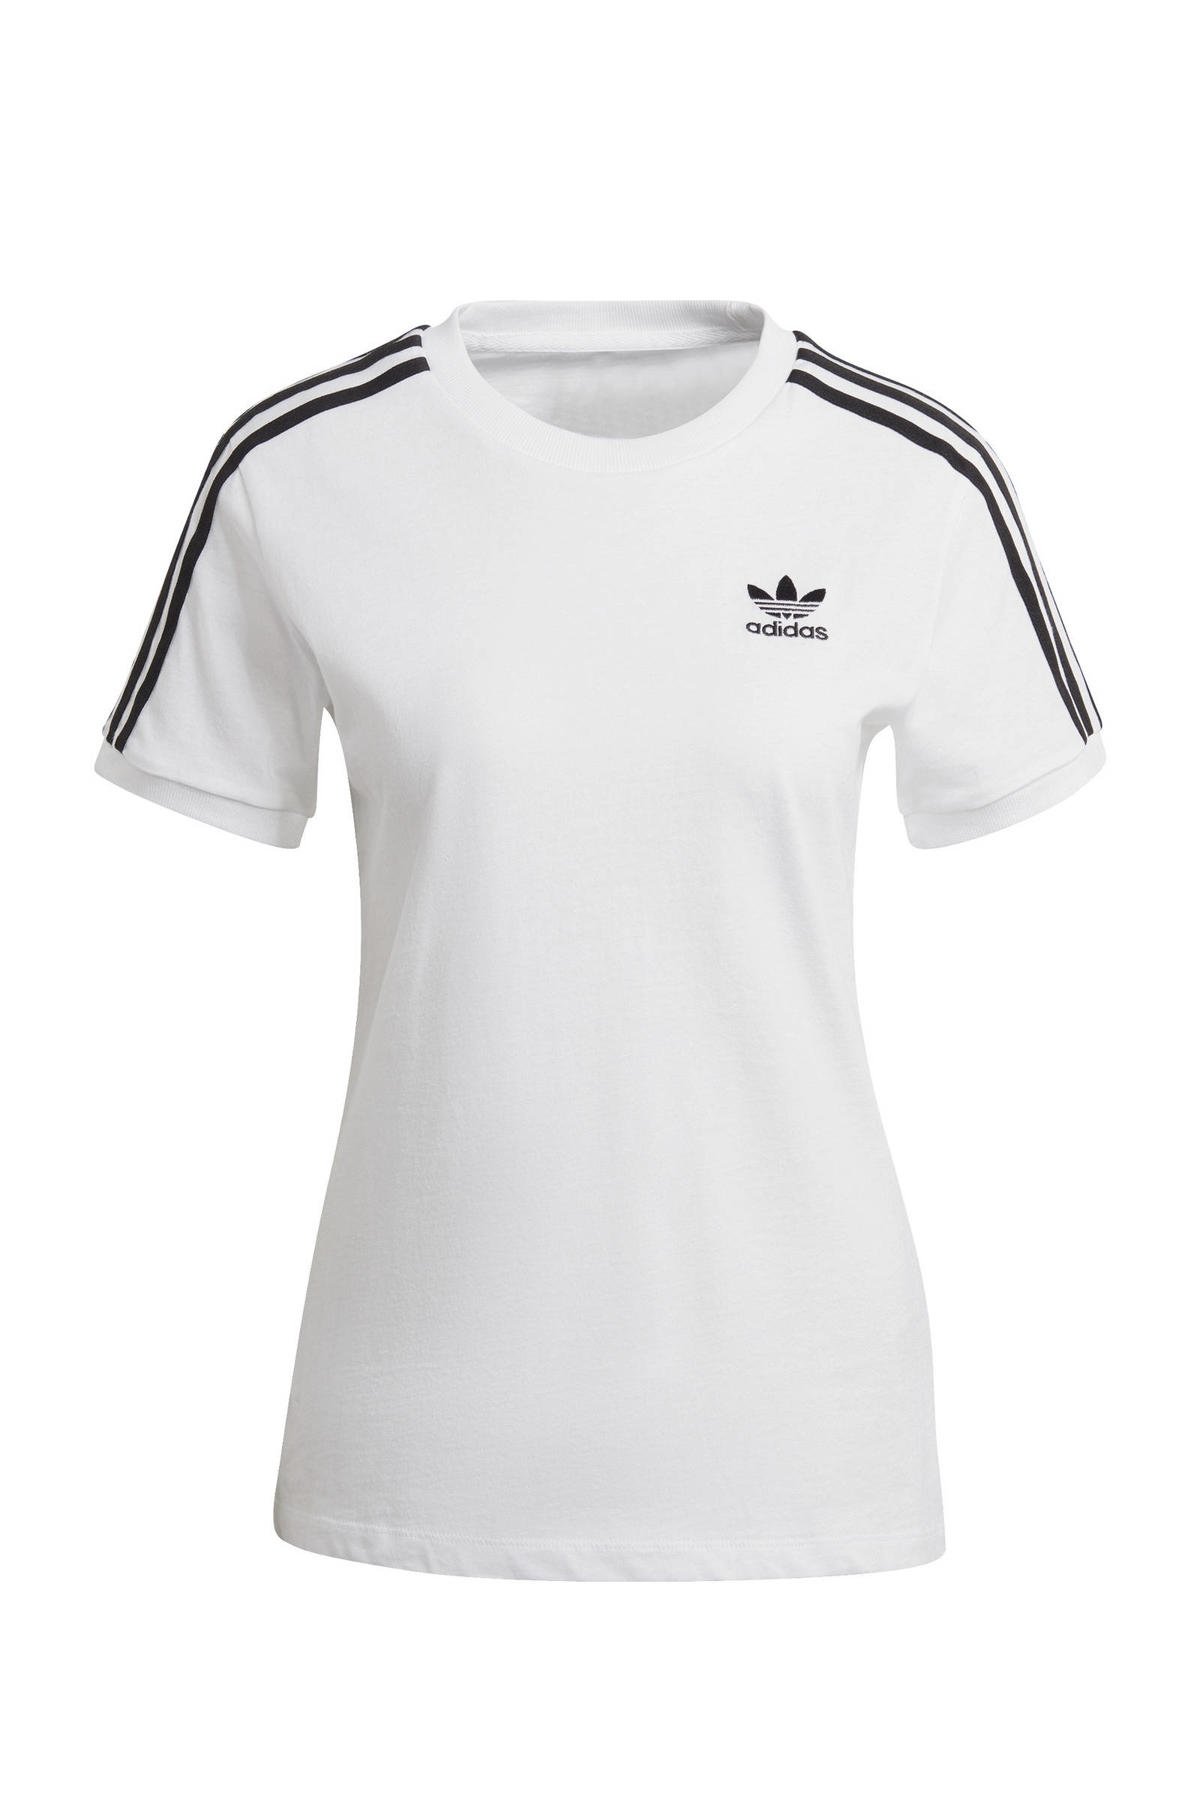 bijkeuken haat De layout adidas Originals Adicolor T-shirt wit/zwart | wehkamp